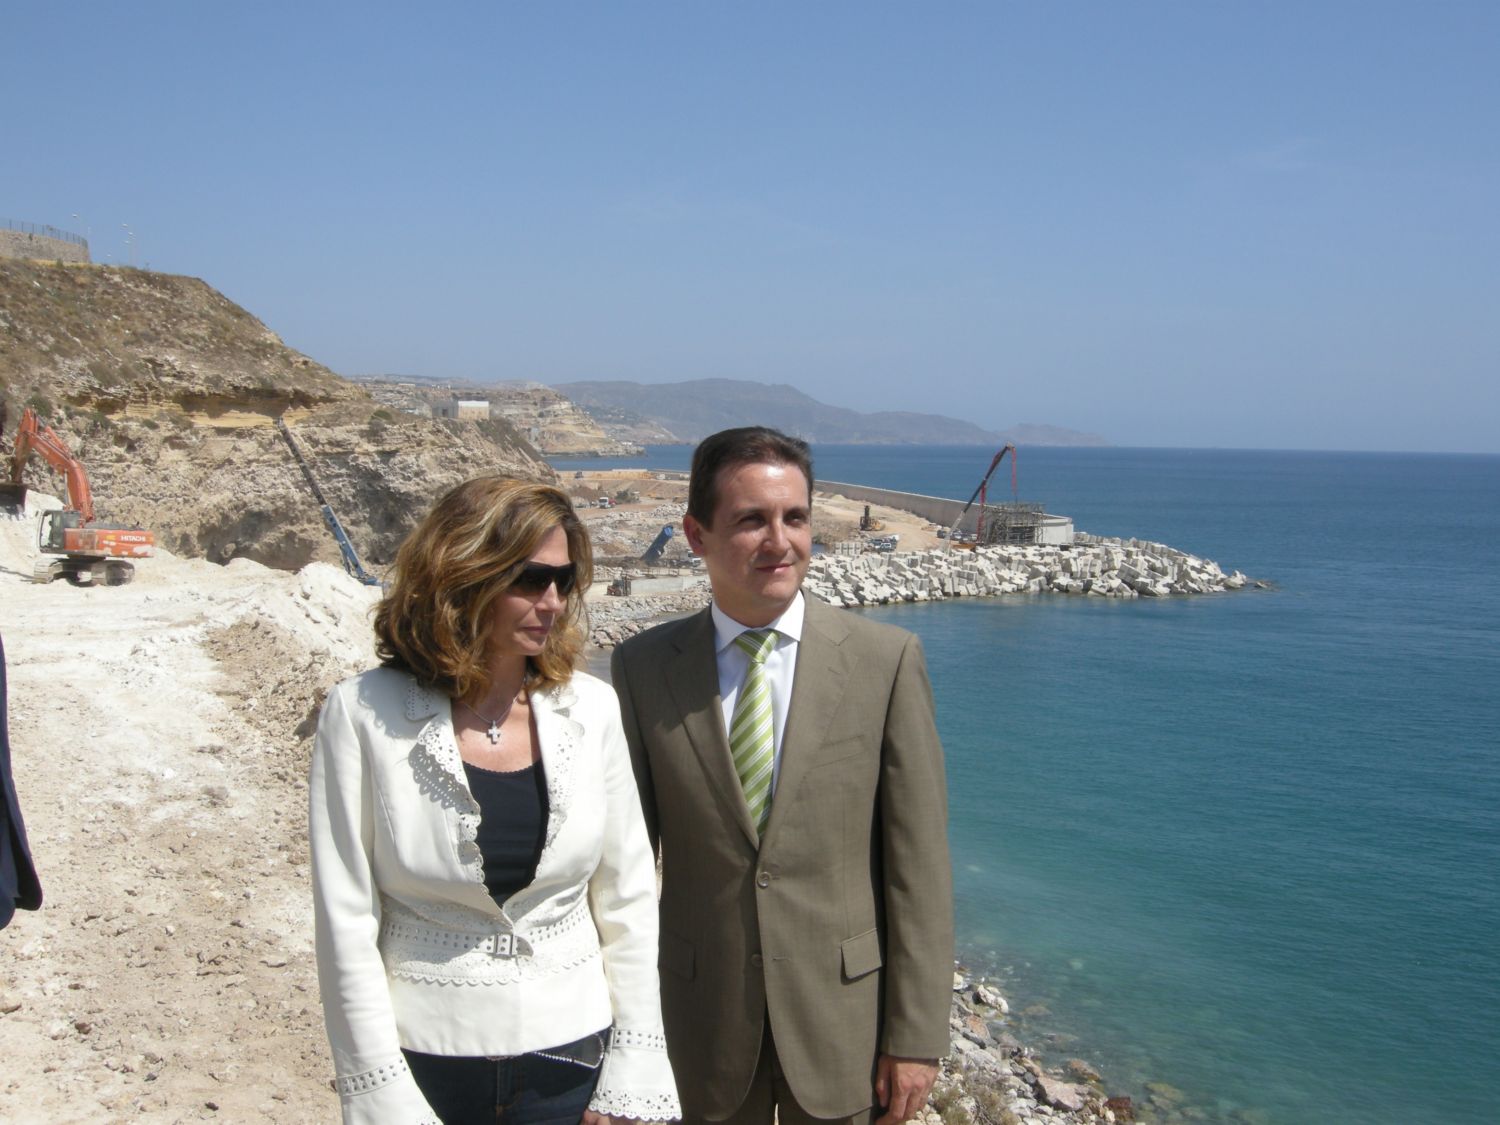 El MARM invierte 15 millones de euros en el conjunto de las obras de los accesos y la ordenación de la playa de Horcas Coloradas, en Melilla